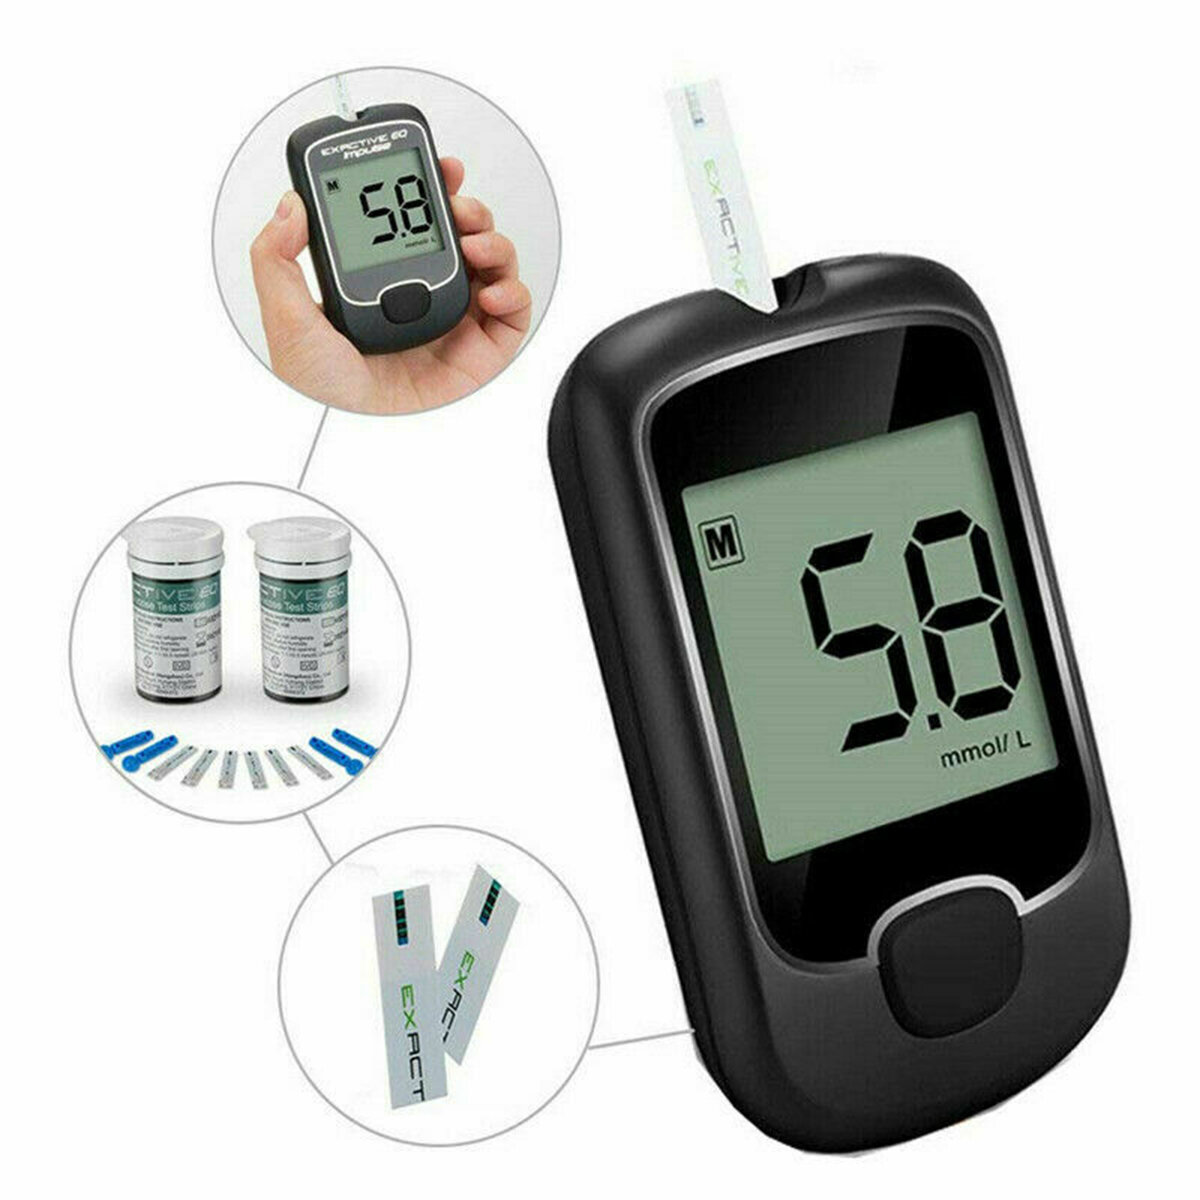 Blood Glucose Monitor Diabetes Testing Blood Sugar Meter With Test Strips Kit